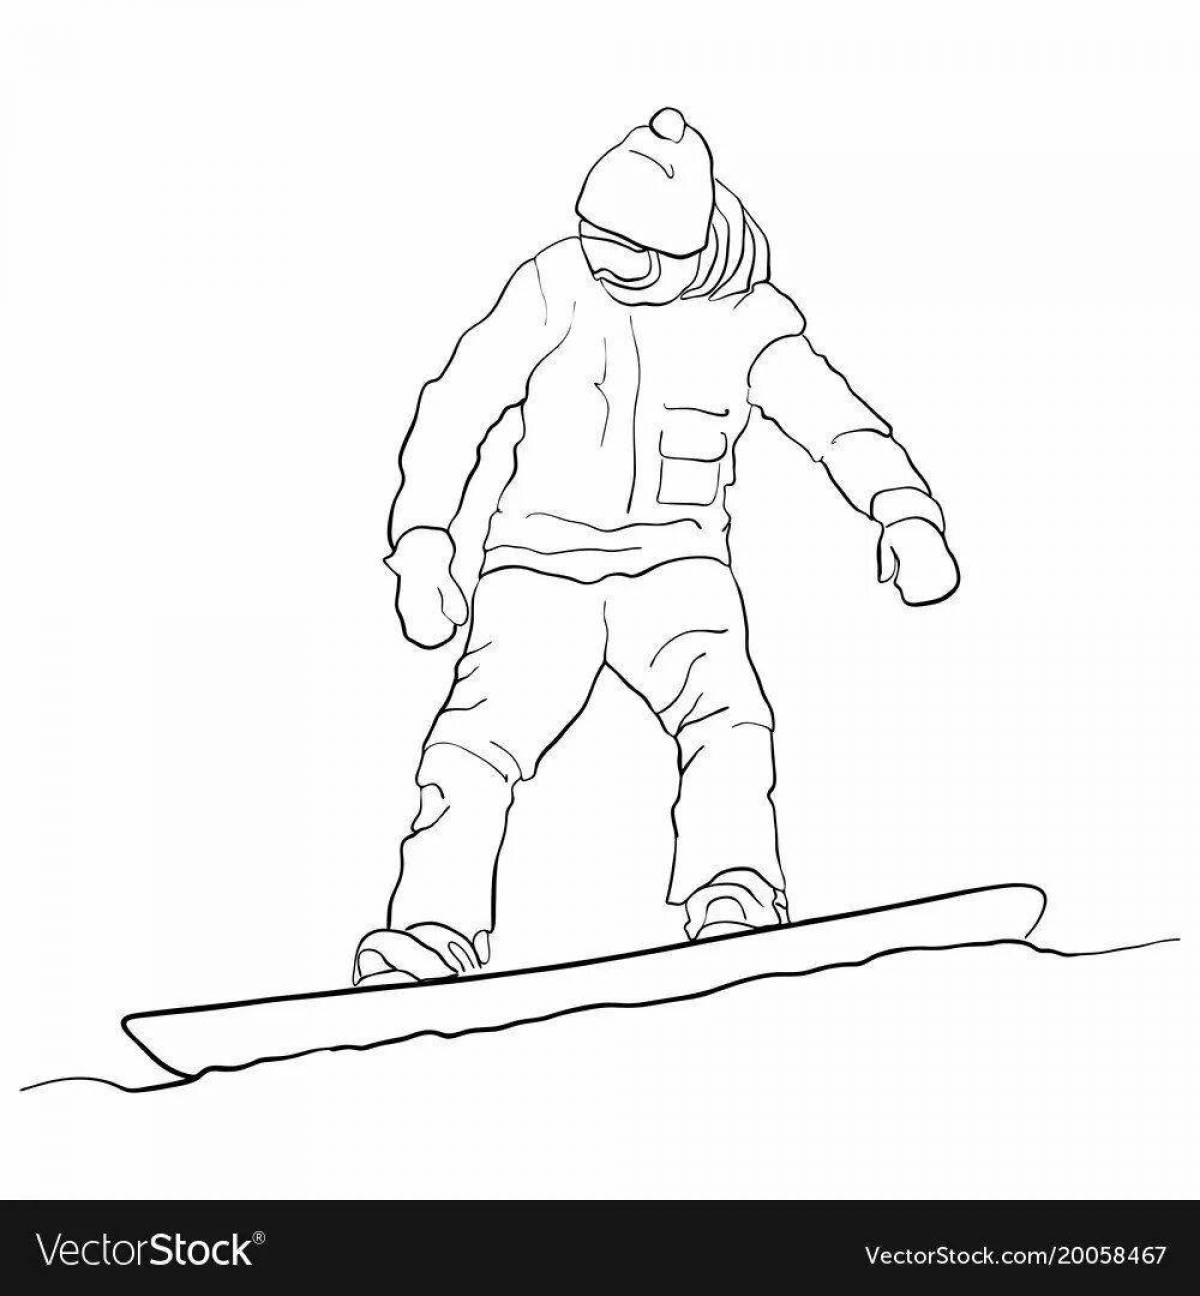 Увлекательная раскраска сноуборд для детей